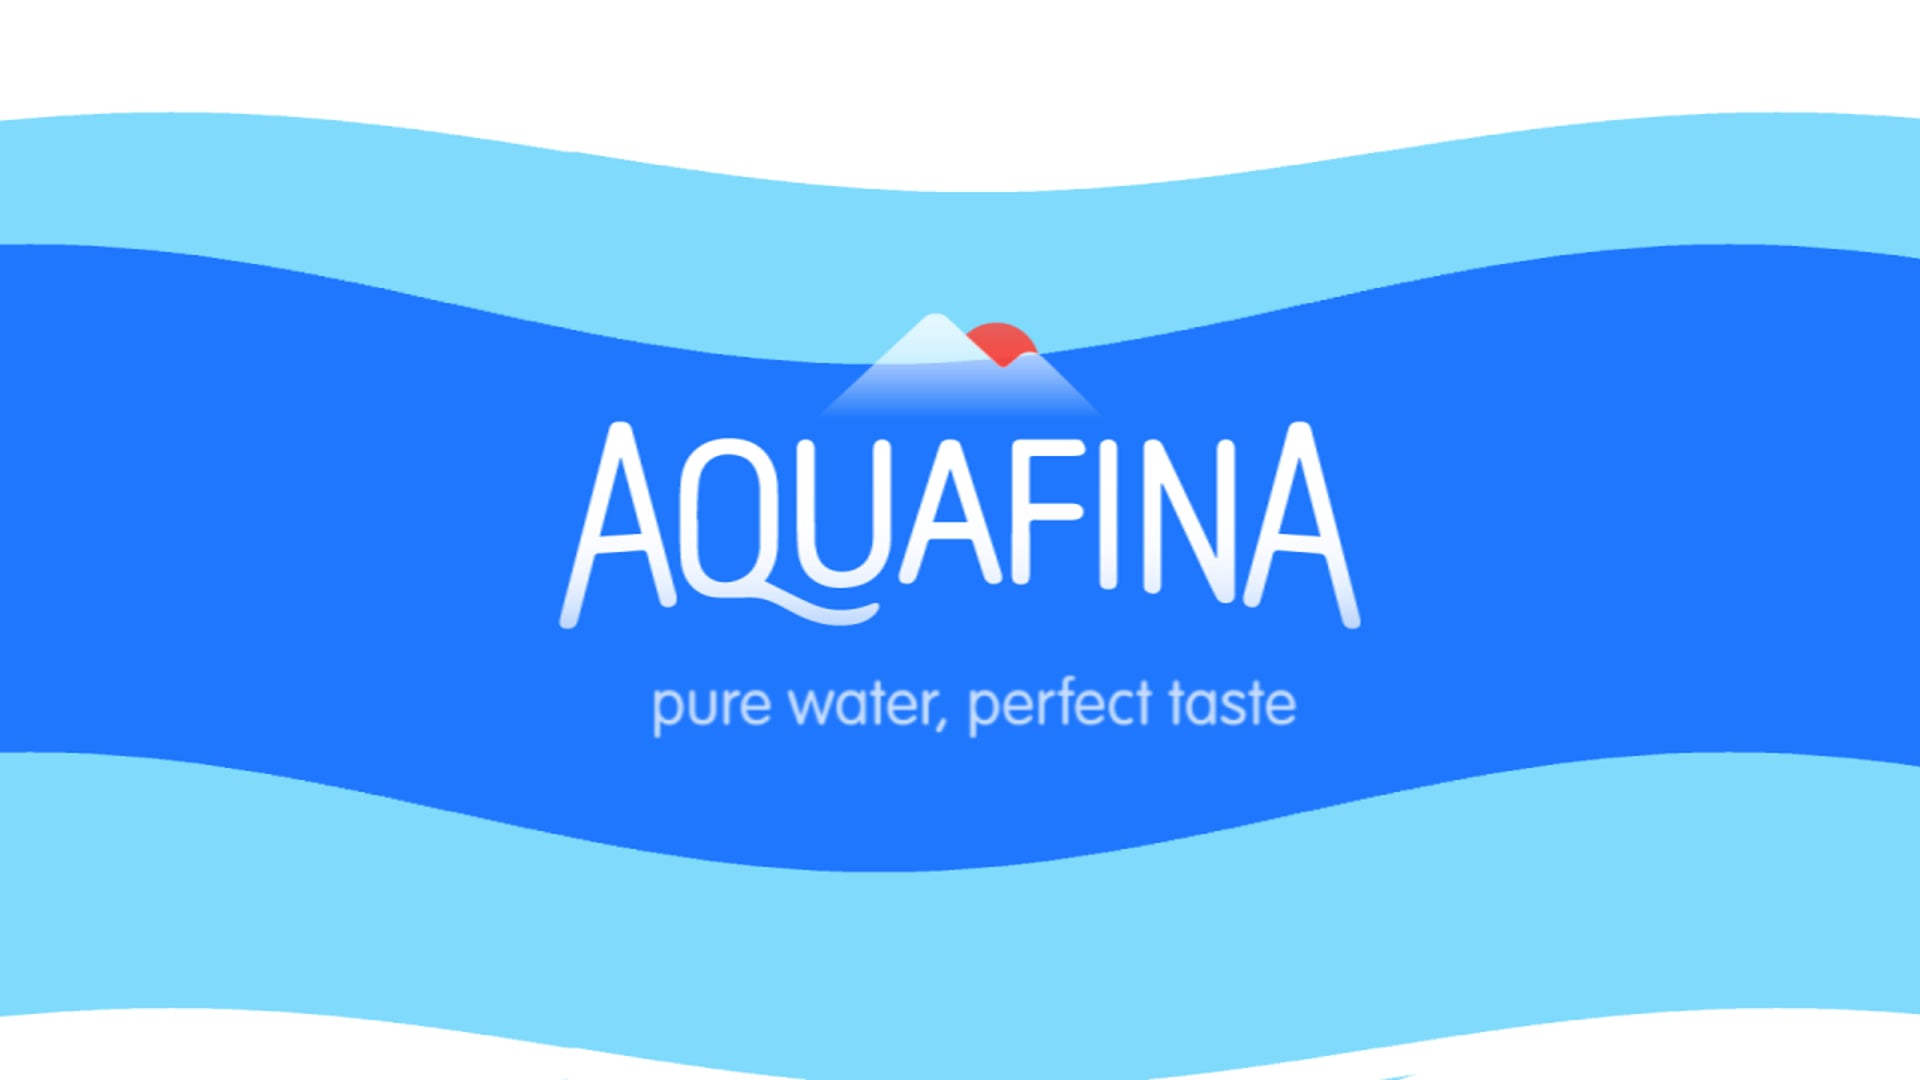 Aquafina Mini Ads